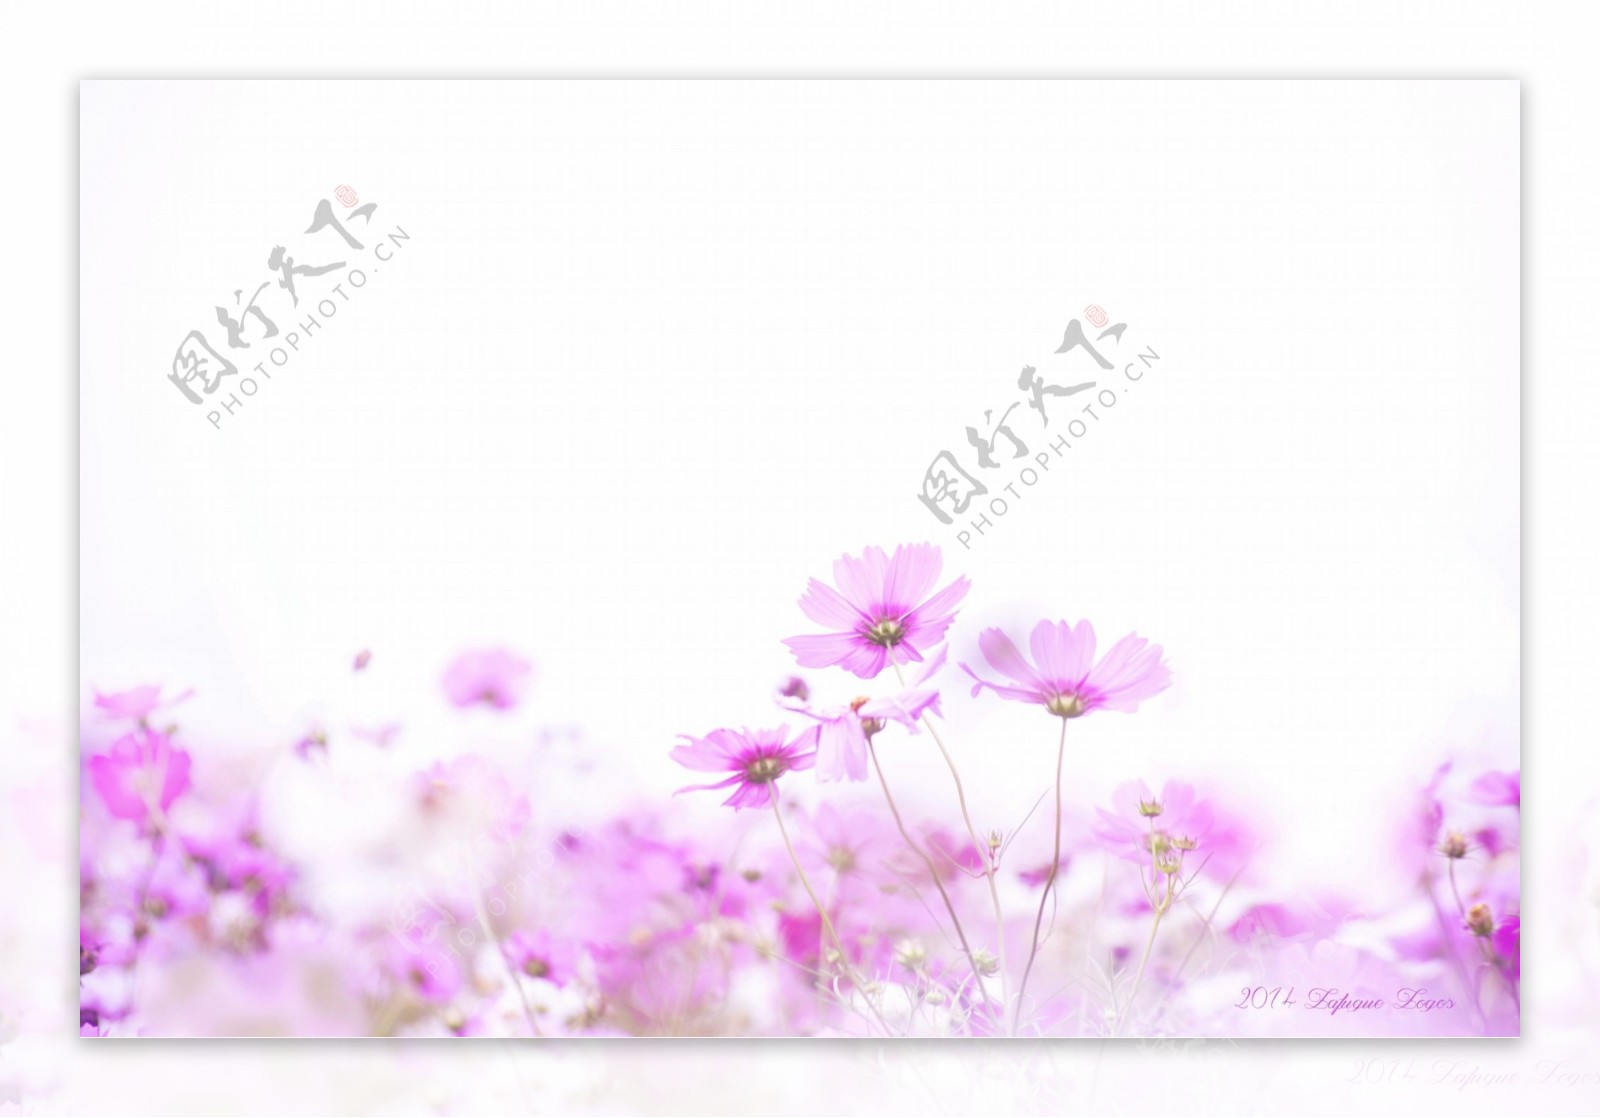 浪漫紫色花朵背景